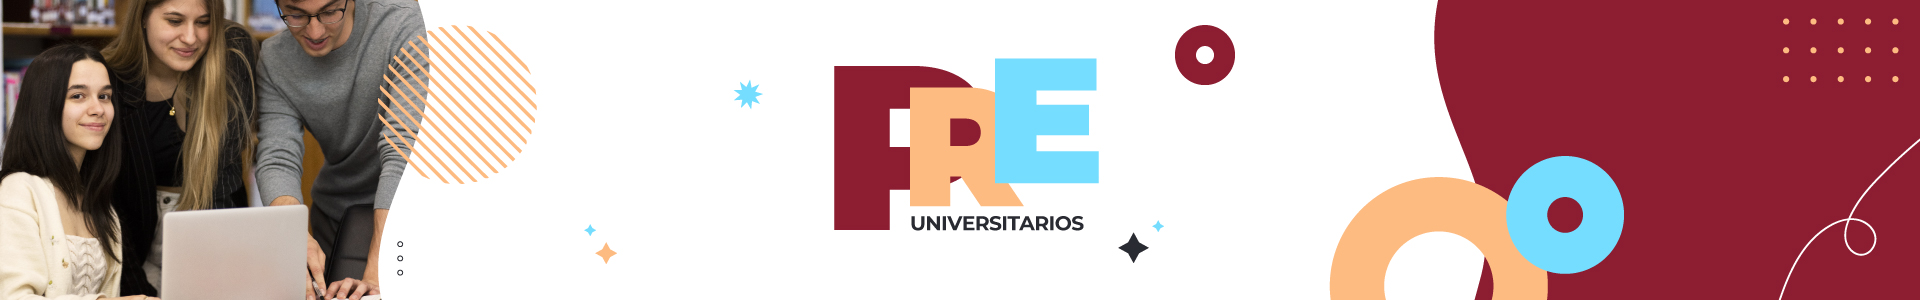 Estudiar en la universidad en Uruguay